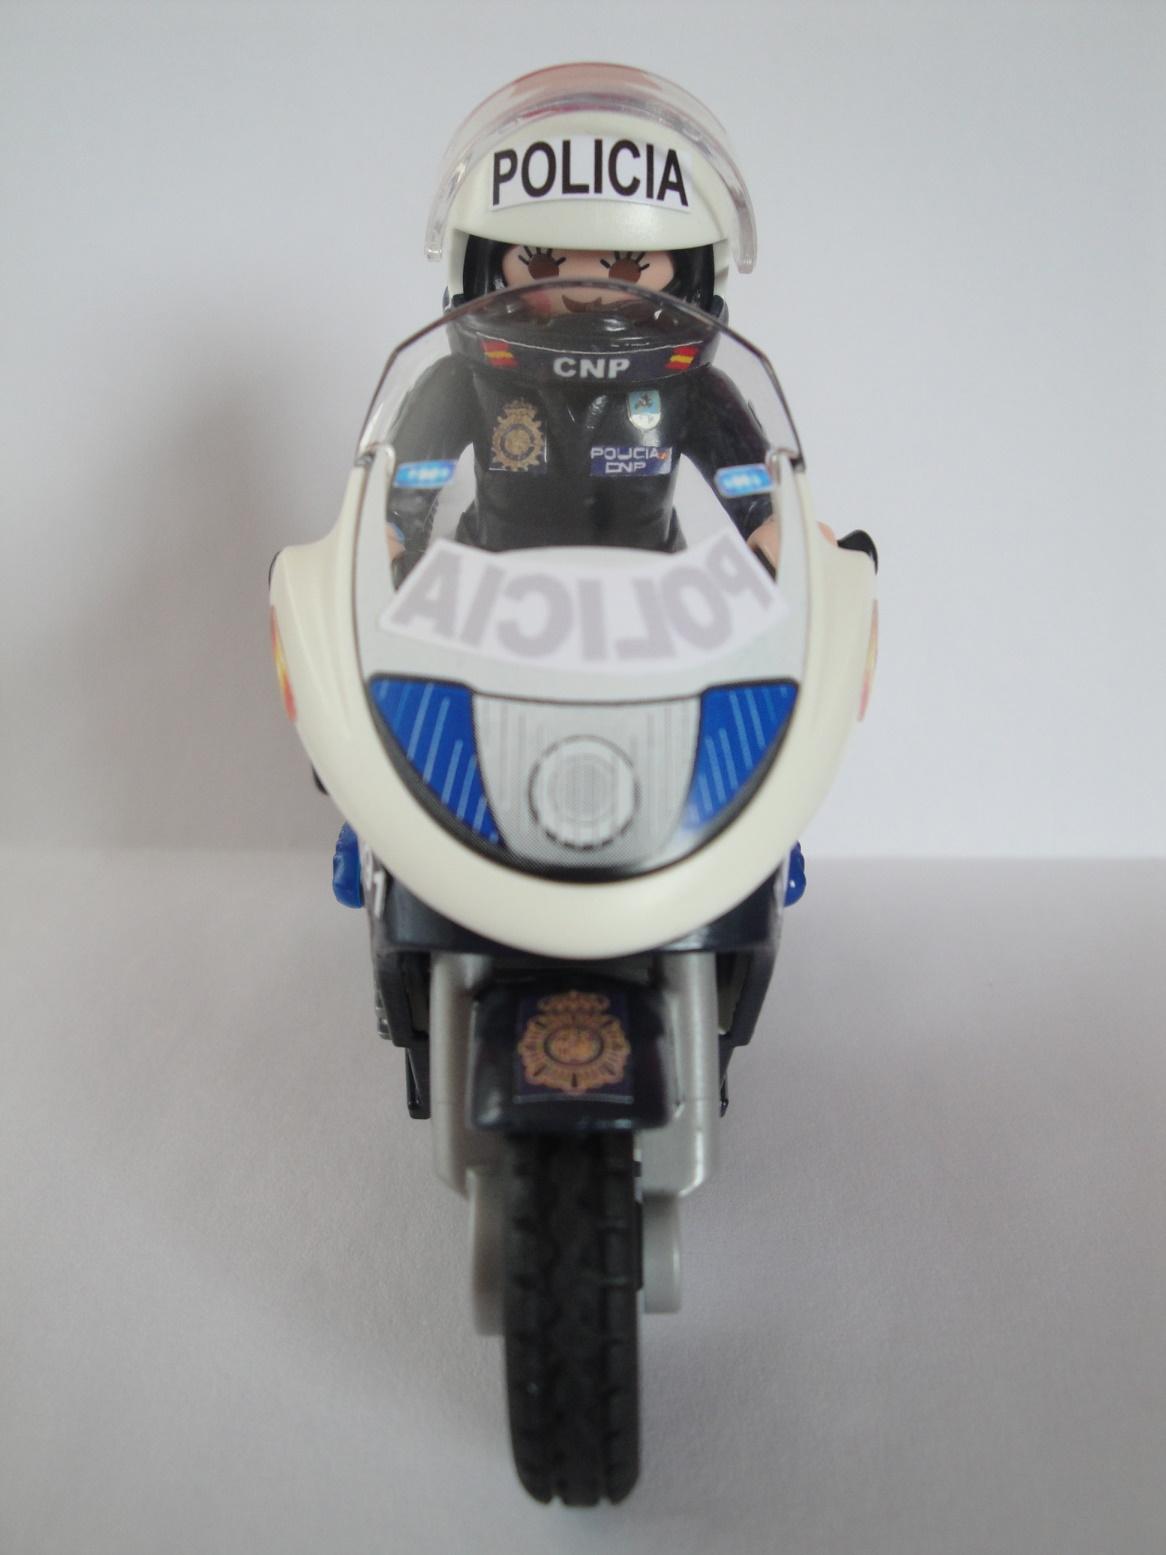 Playmobil personalizado Policía Nacional CNP Grupo de Motos patrulla seguridad ciudadana elige hombre o mujer